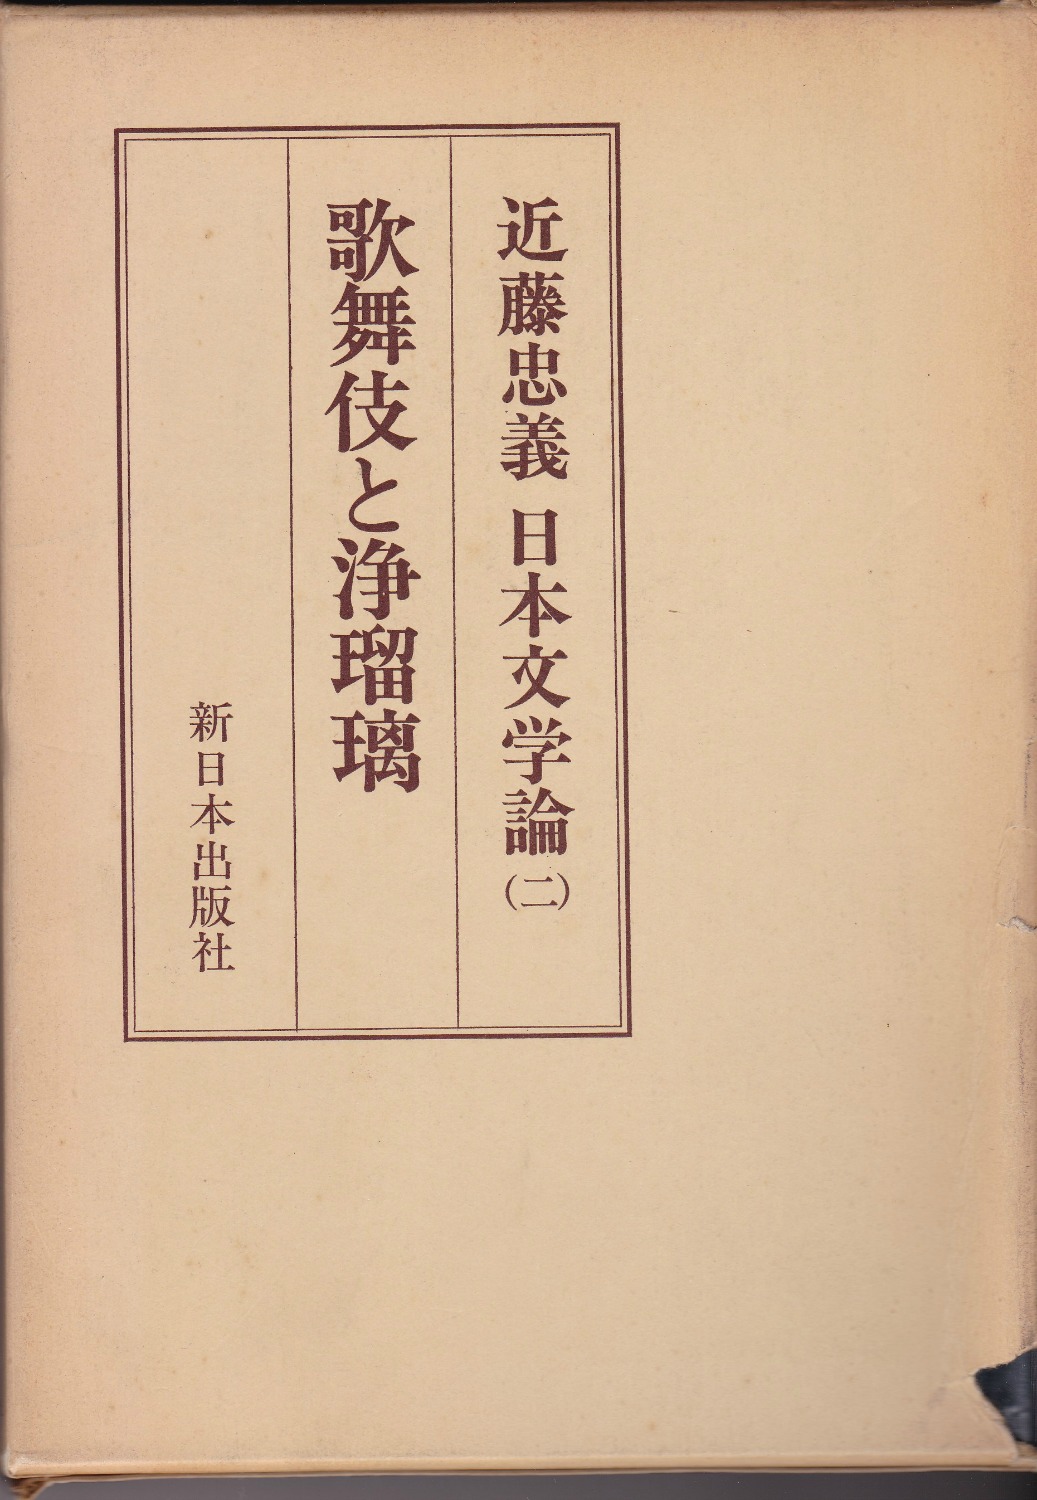 歌舞伎と浄瑠璃　(近藤忠義日本文学論 ; 2)